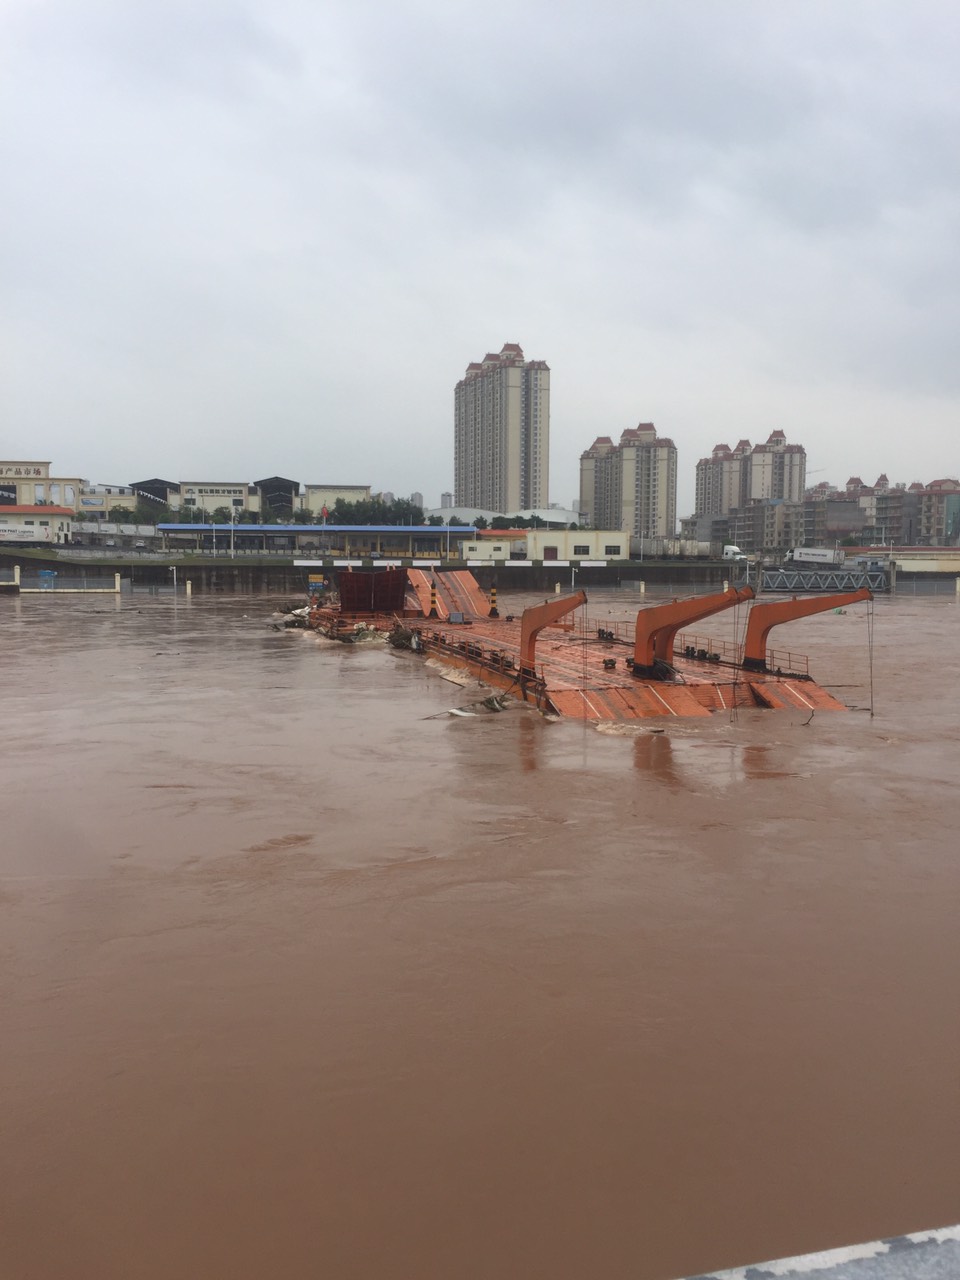 Nước lũ sông Ka Long dâng cao, hoạt động XNK qua cầu phao tạm km3+4 Hải Yên bị ngừng.